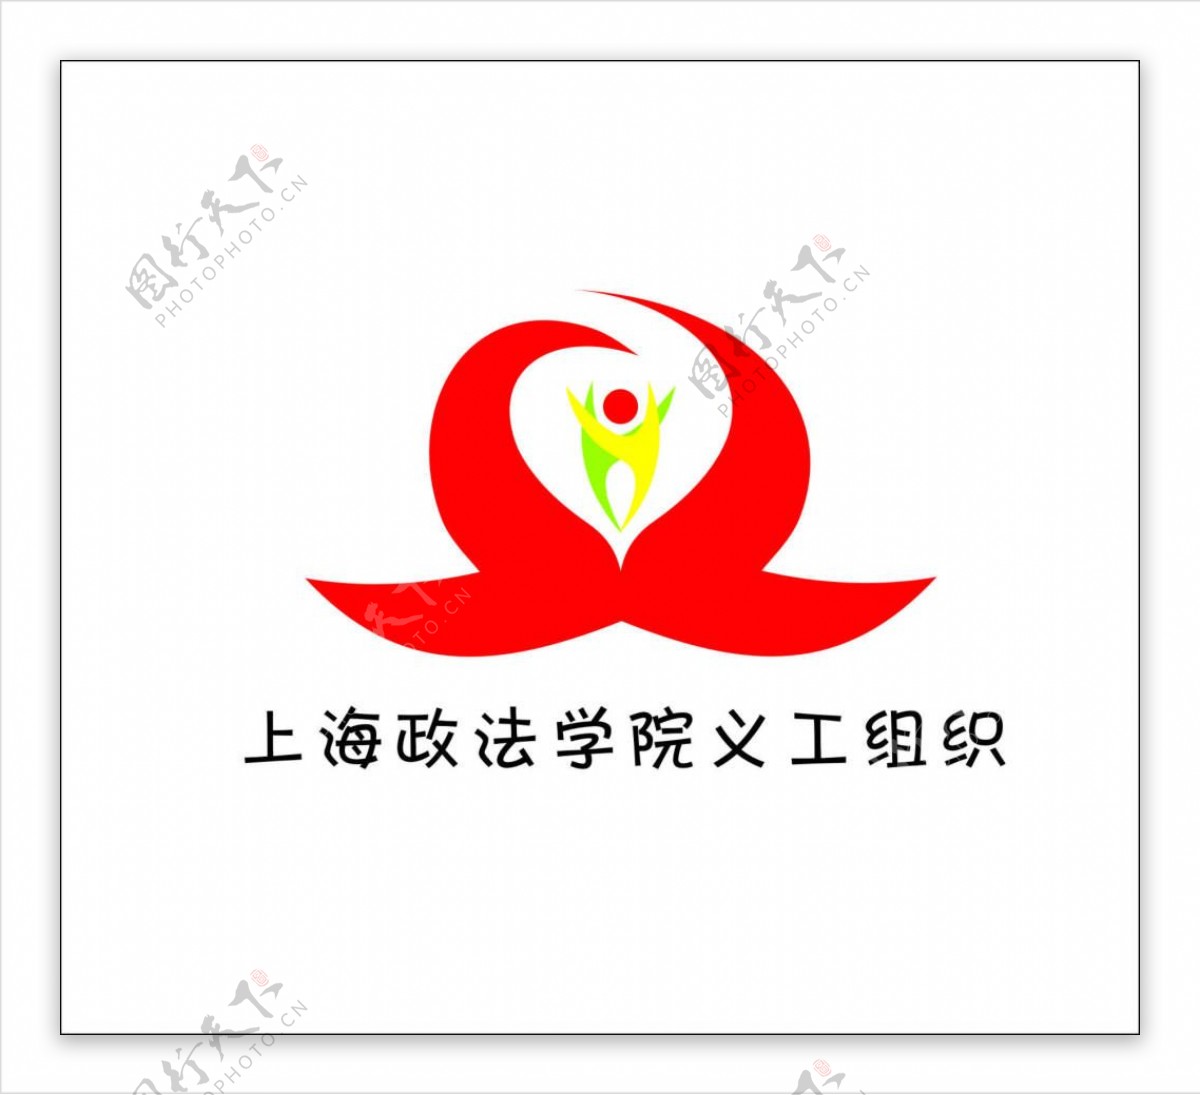 上海政法学院义工组织